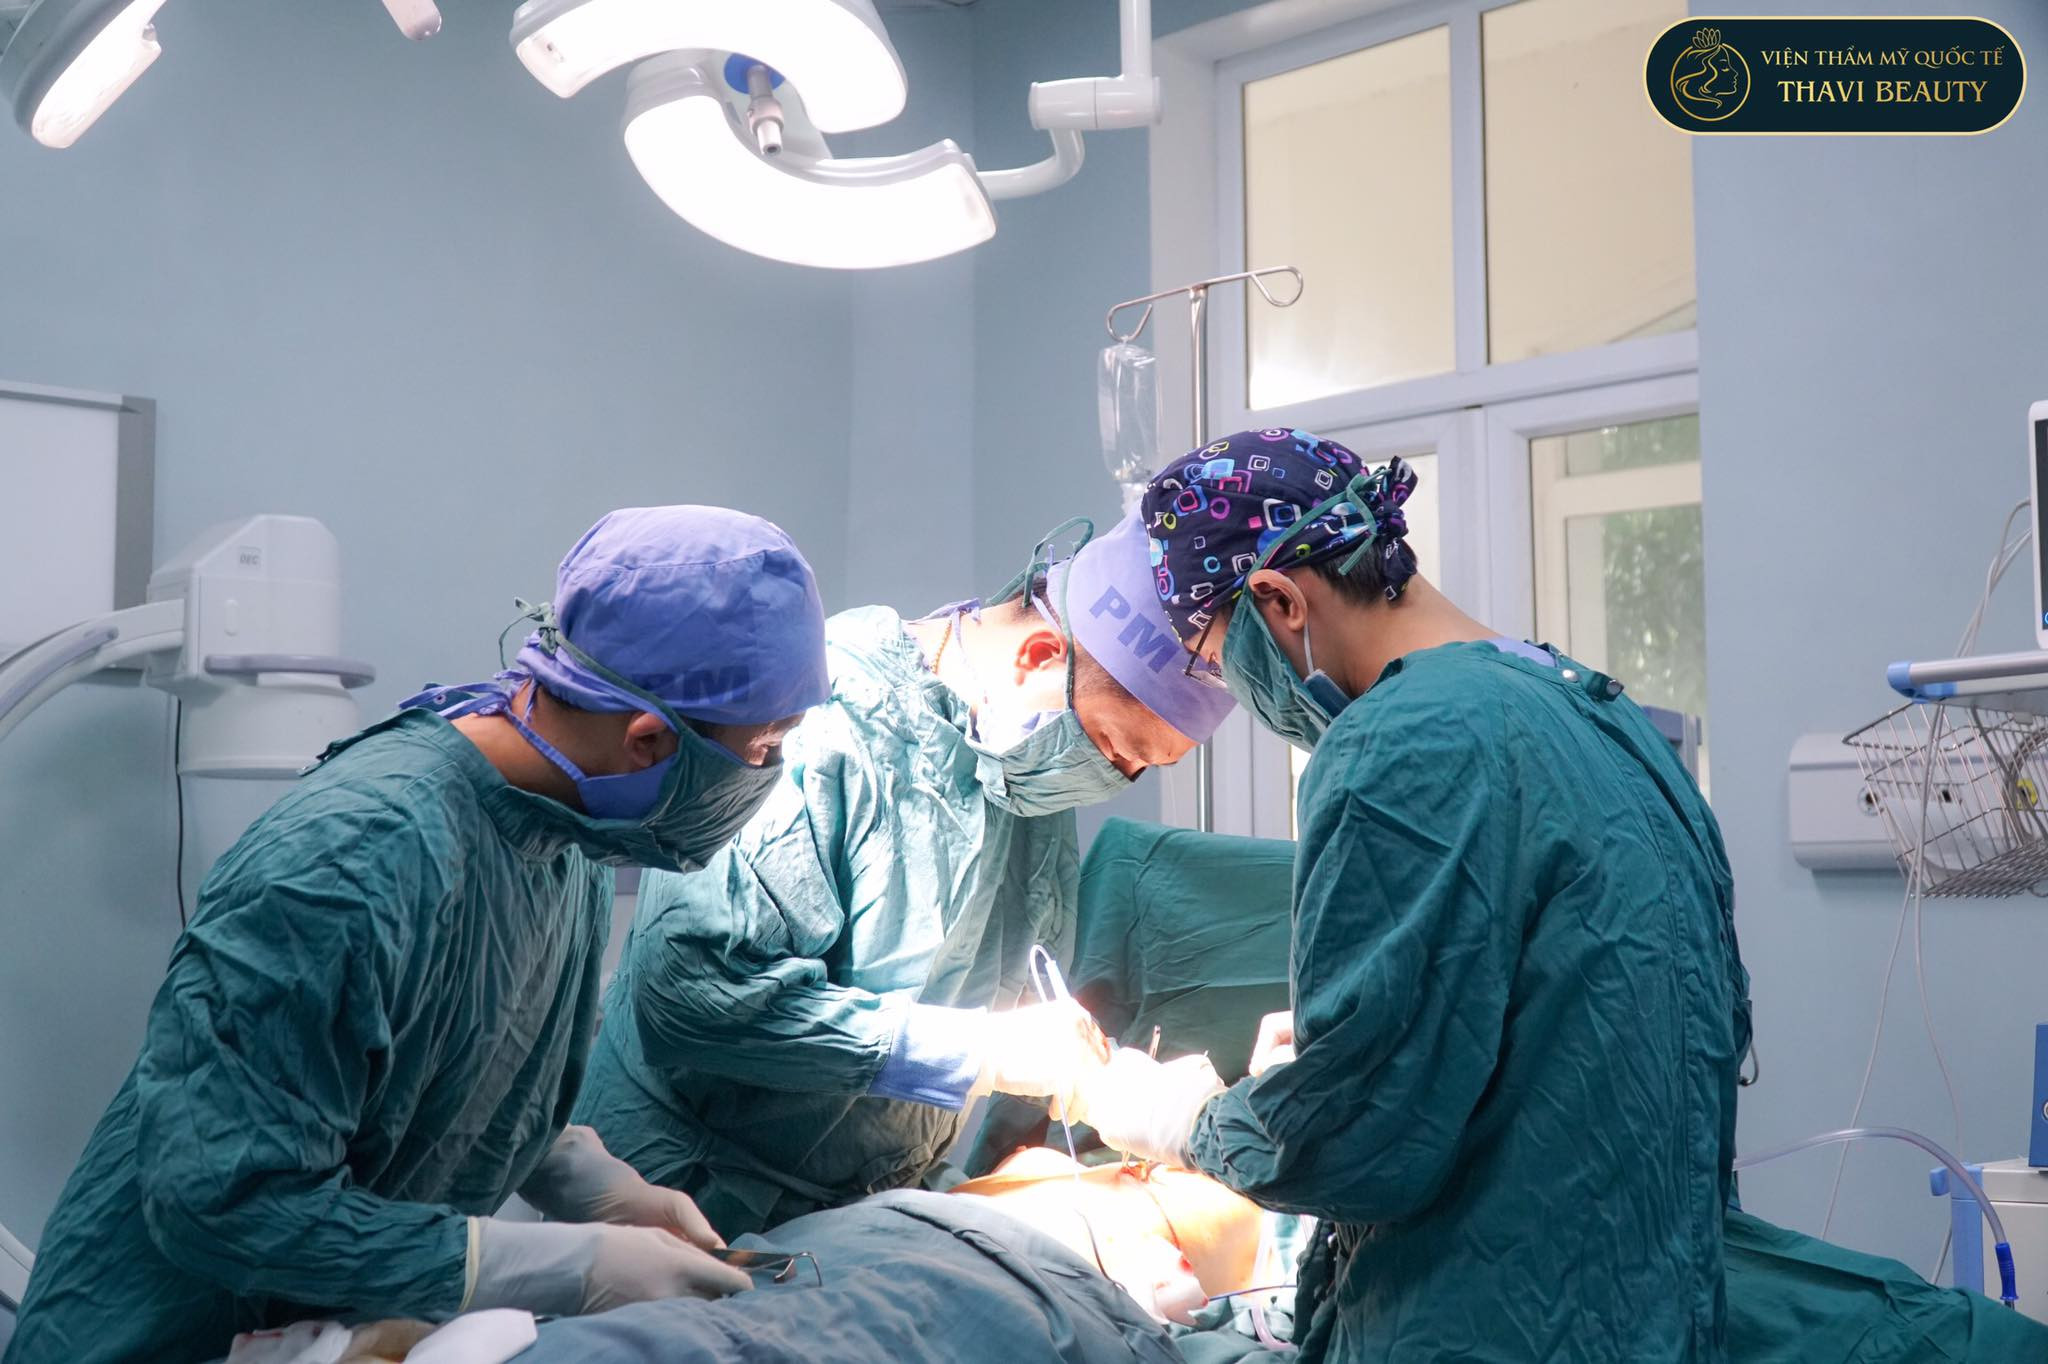 Thavi Beauty triển khai chương trình từ thiện ý nghĩa “Phẫu thuật nhân đao”, được triển khai từ năm 2019 đến nay. Ảnh: Mạnh Cầm